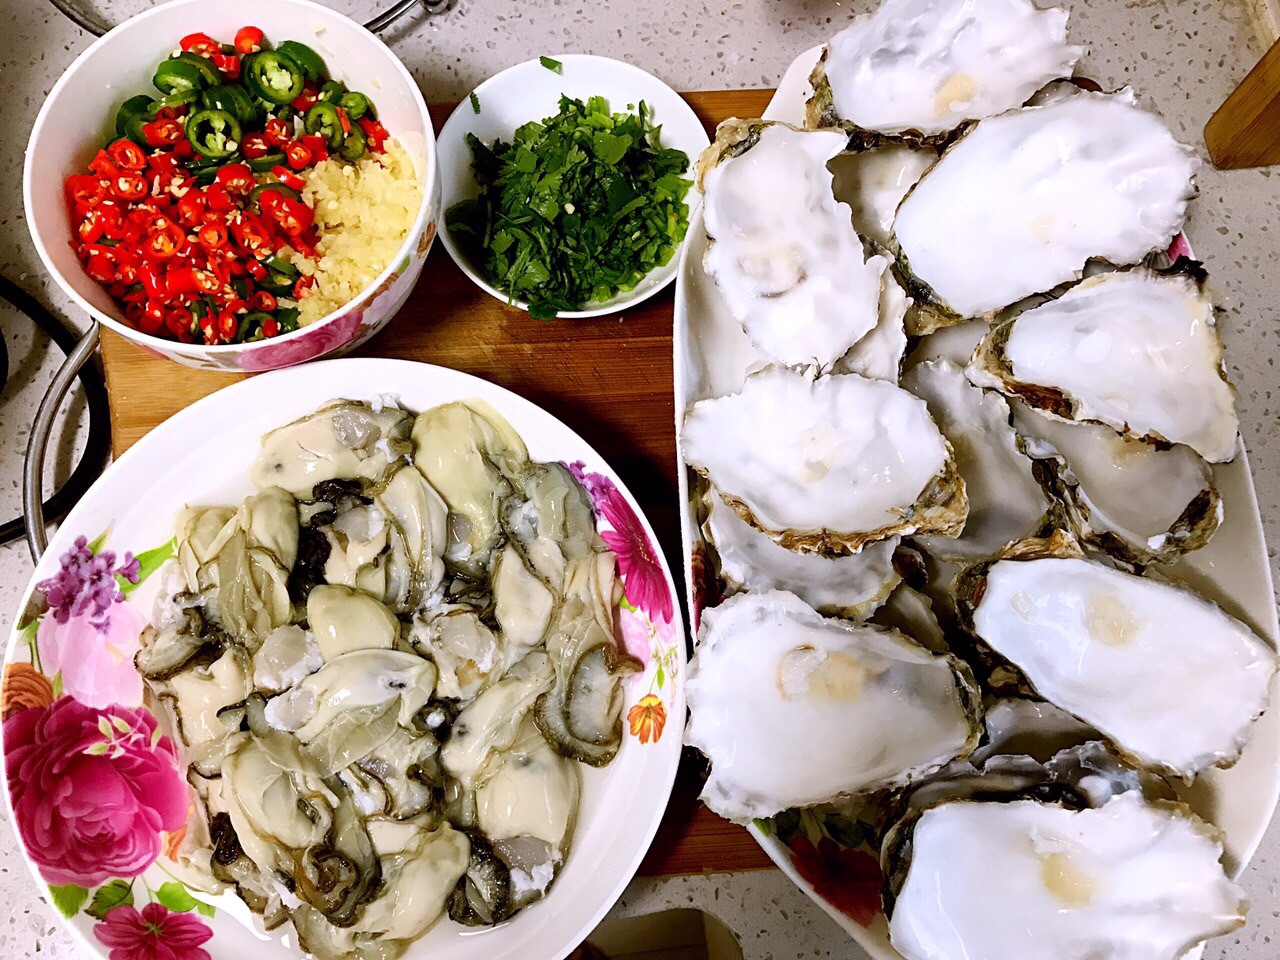 初冬牡蛎最肥美，解锁生蚝的20种吃法，生吃、烧烤、清蒸、油炸、爆炒、盐焗、芝士焗、蚵仔煎、哪种最好吃 - 知乎